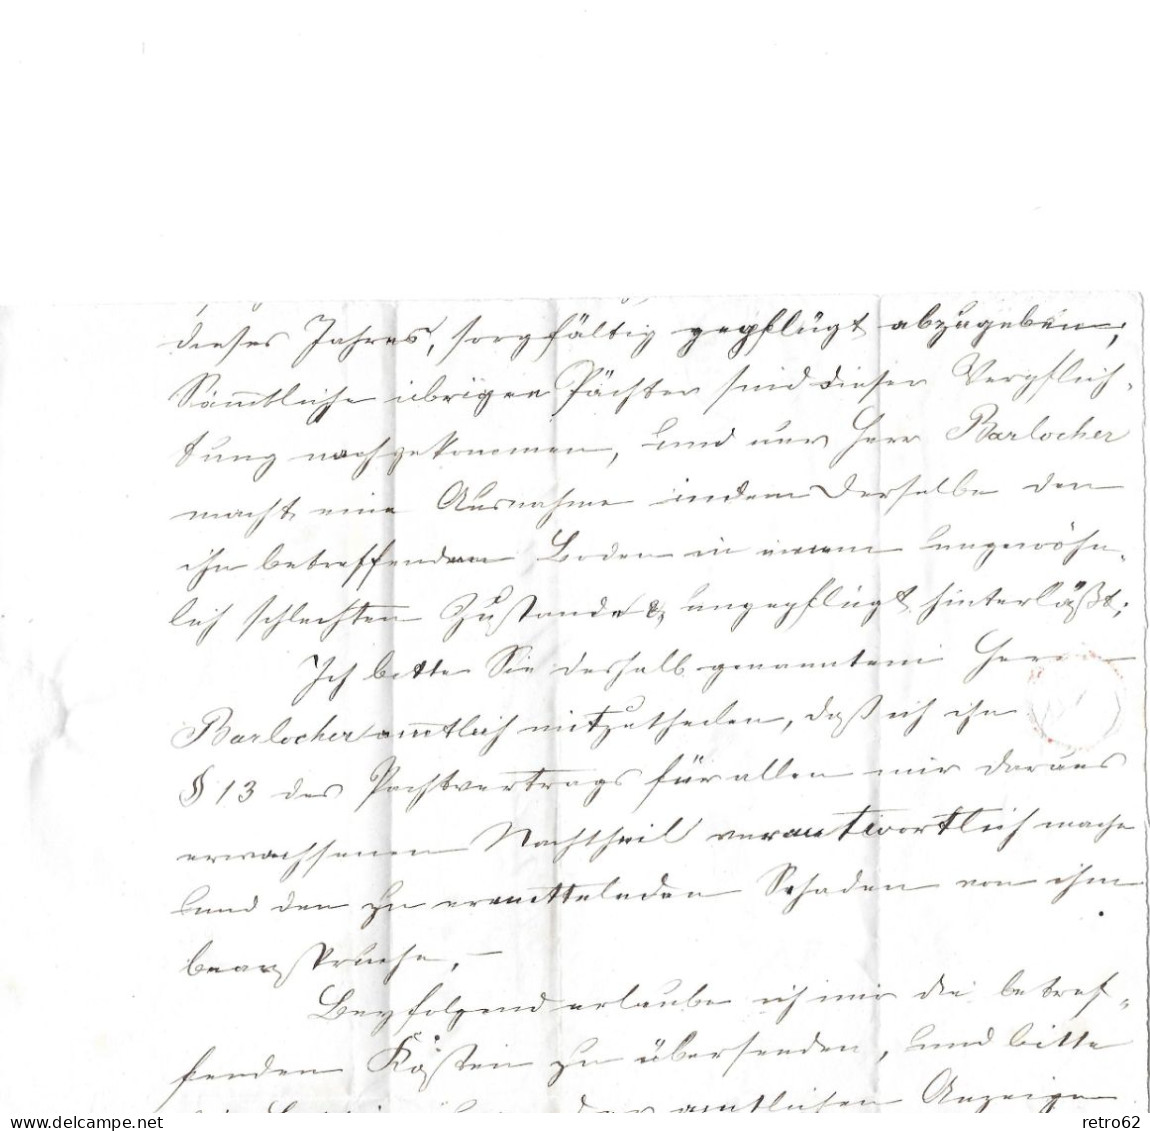 1858 HEIMAT ST.GALLEN ► Faltbrief (Fragment) Von Rorschach Nach Thal   ►SBK-22B3 Rorschach 5 NOV 58◄ - Lettres & Documents